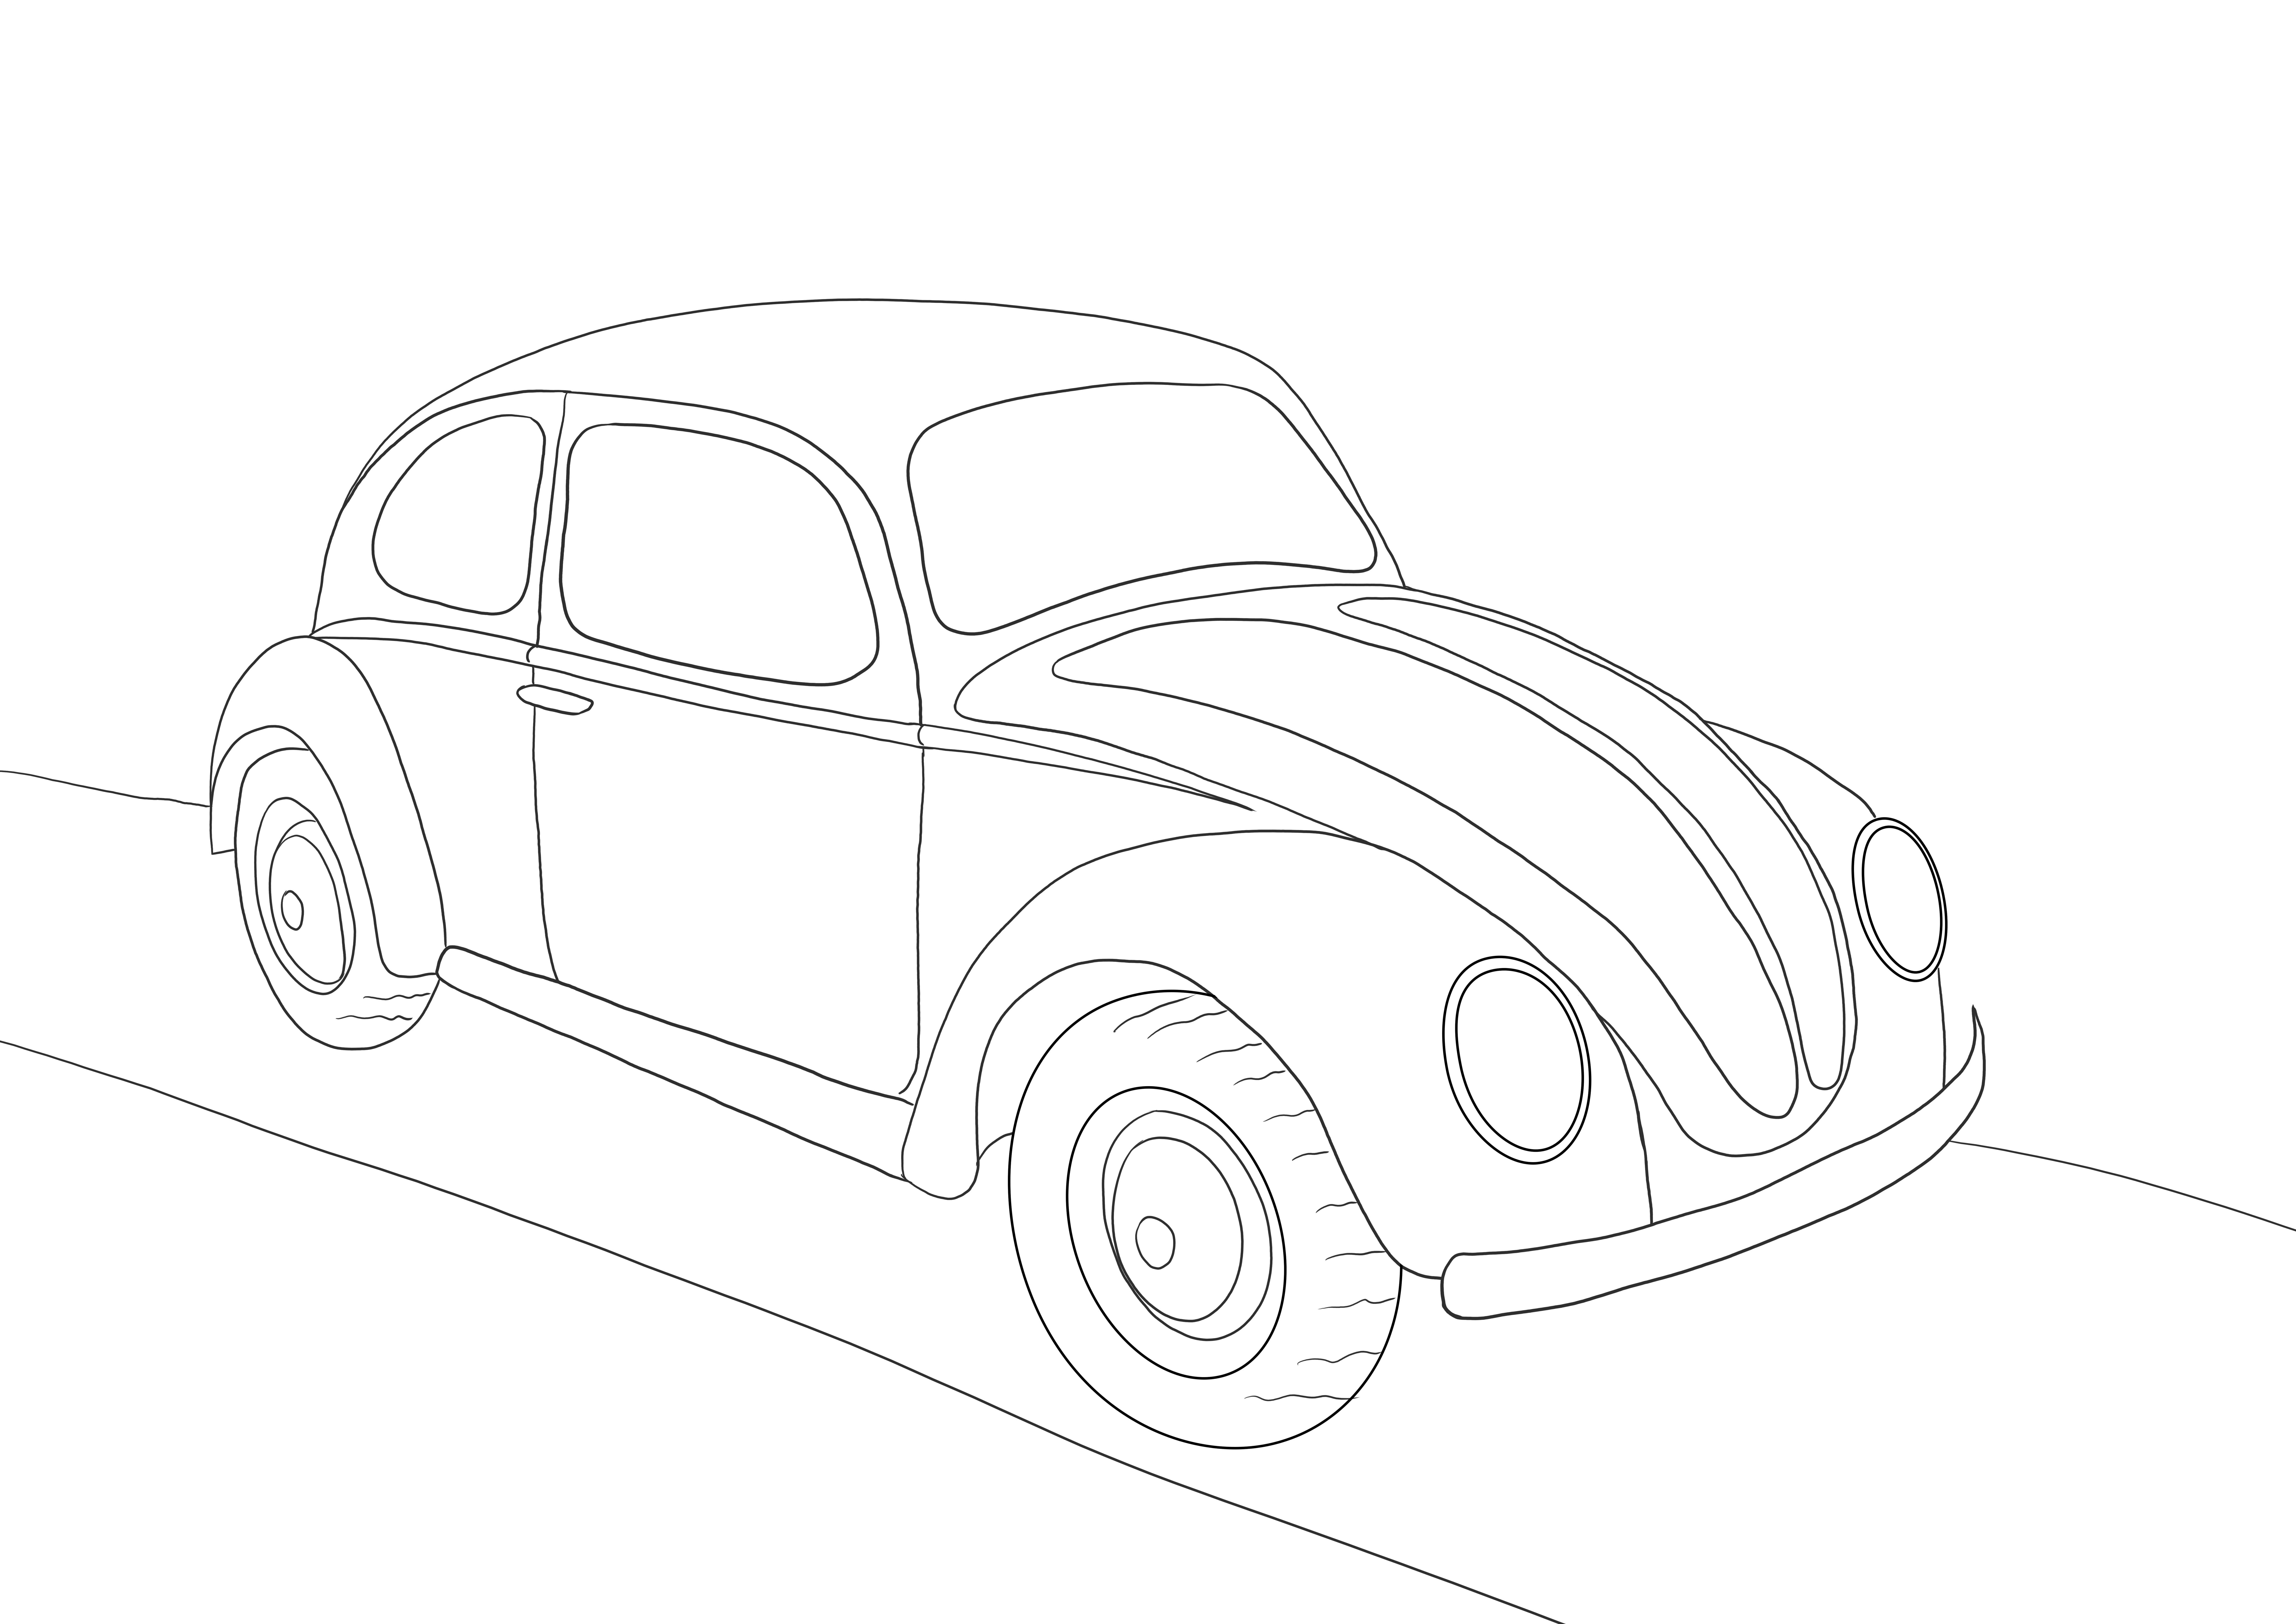 Volkswagen Beetle, daha sonraki bir resim için boyamak veya kaydetmek için ücretsiz yazdırılabilir